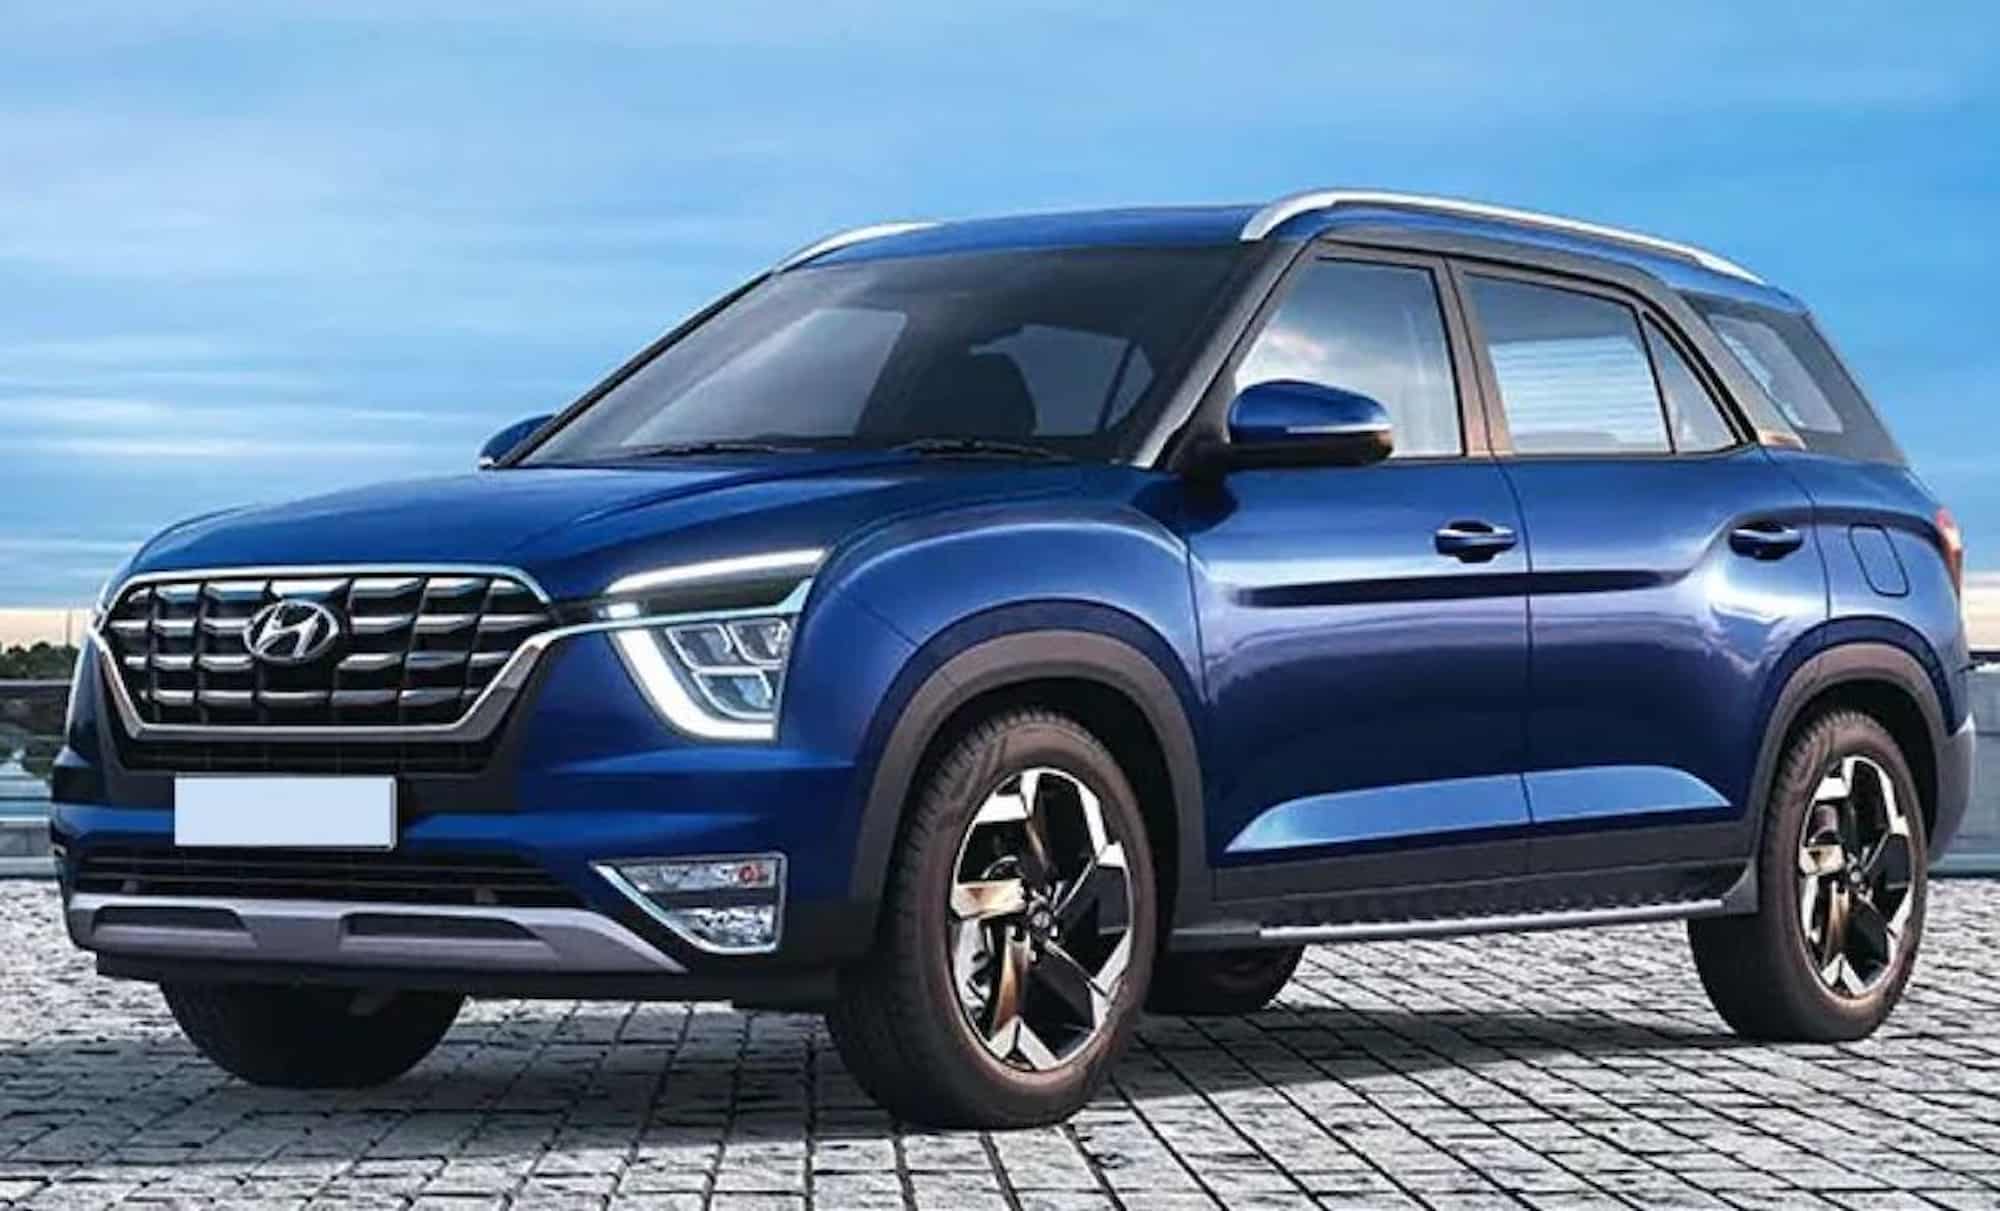 Hyundai alcazar facelift